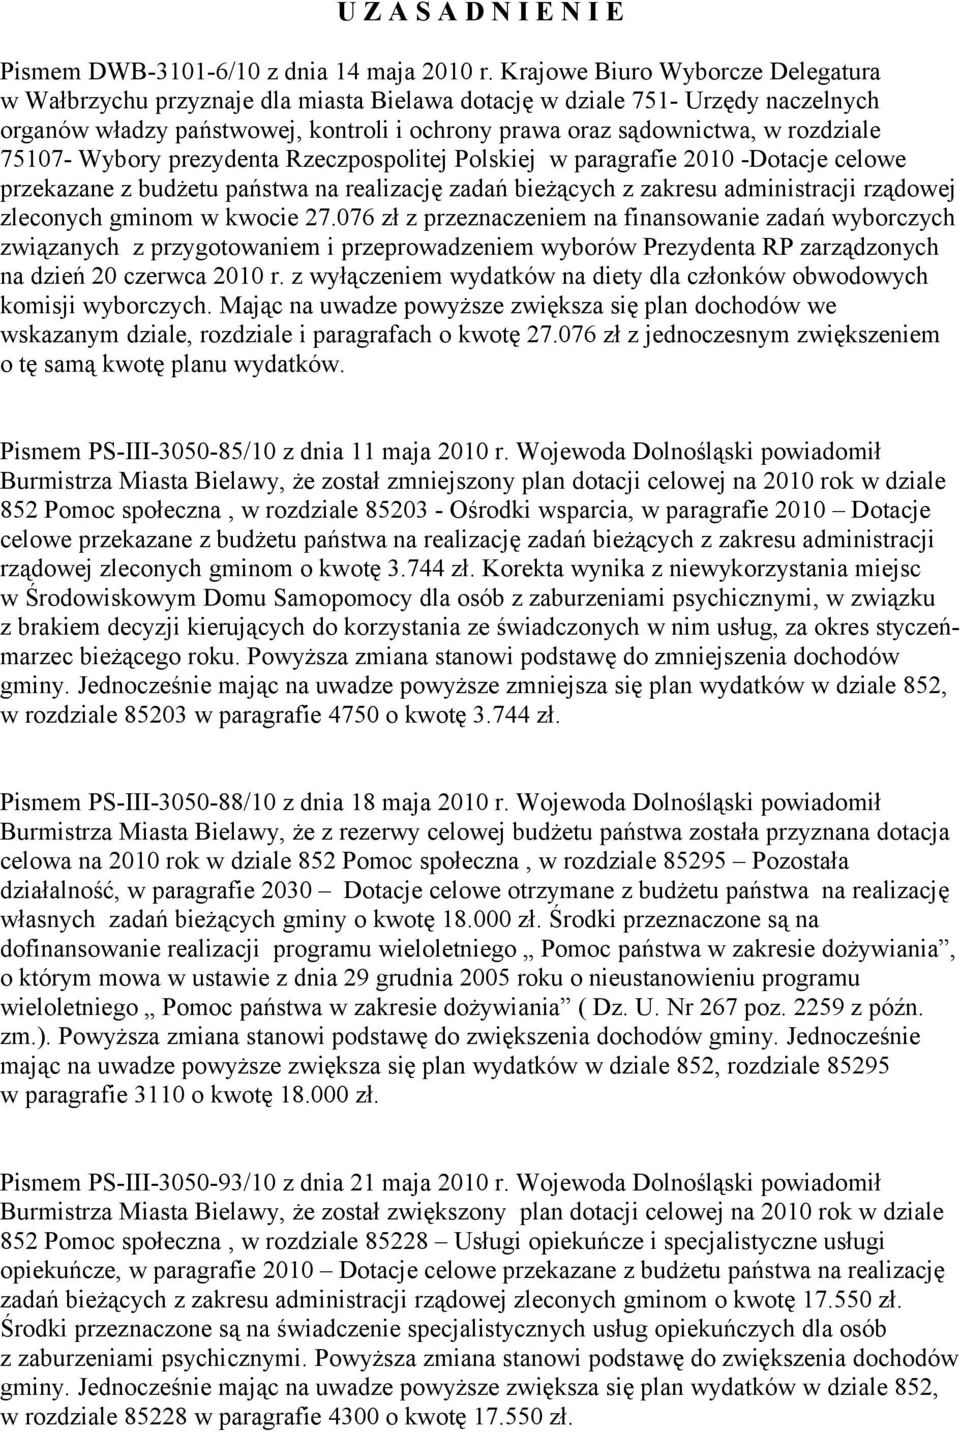 75107- Wybory prezydenta Rzeczpospolitej Polskiej w paragrafie 2010 -Dotacje celowe przekazane z budżetu państwa na realizację zadań bieżących z zakresu administracji rządowej zleconych gminom w